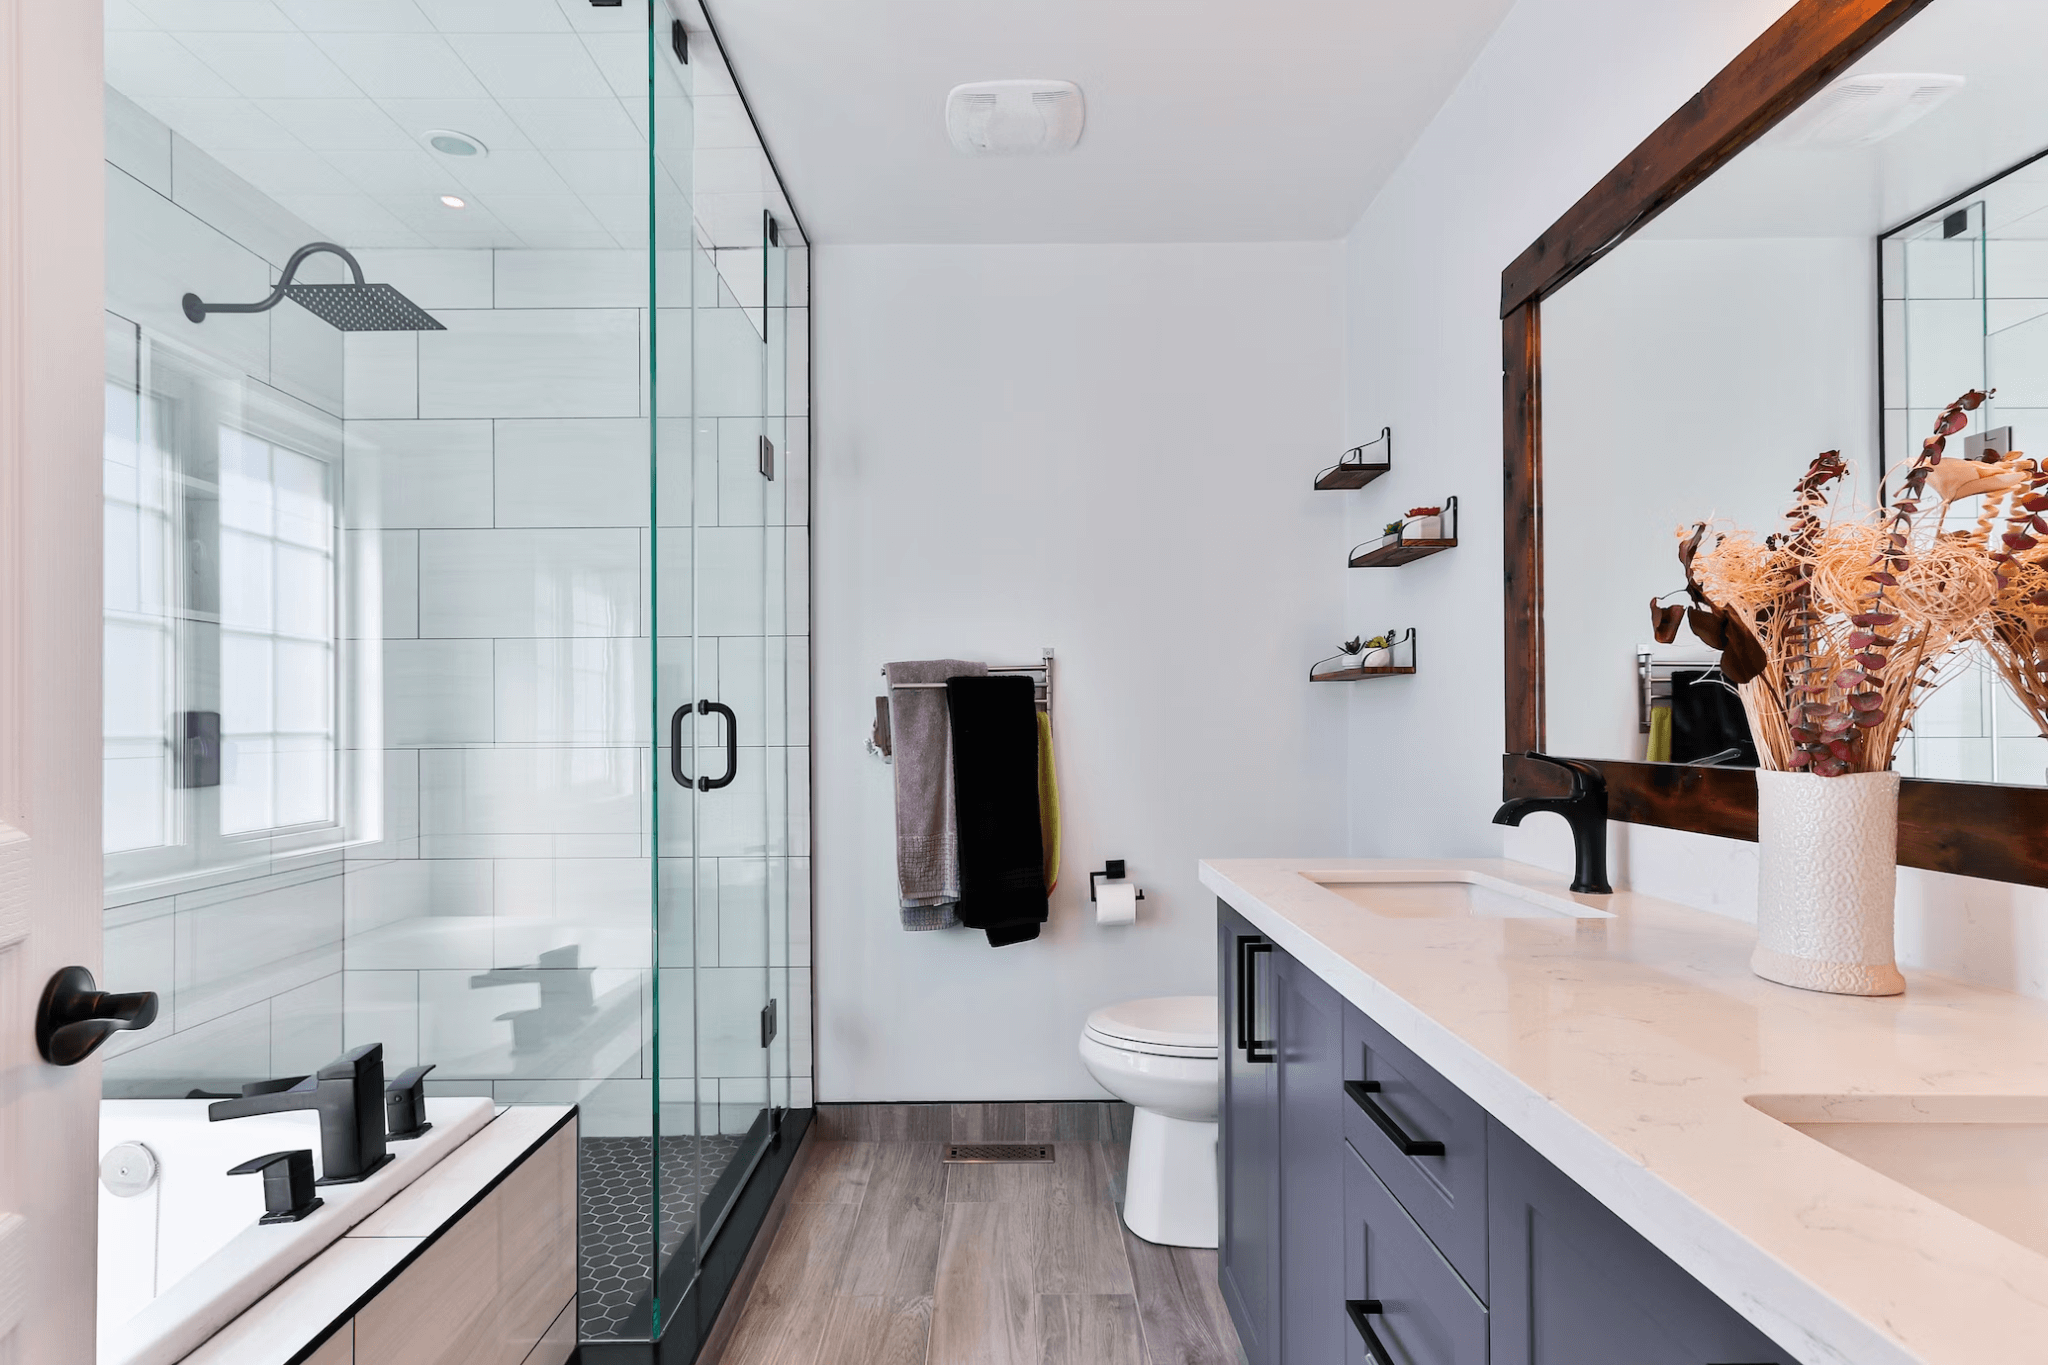 Vrijstaand versus ingebouwd badkamermeubilair: wat is beter?